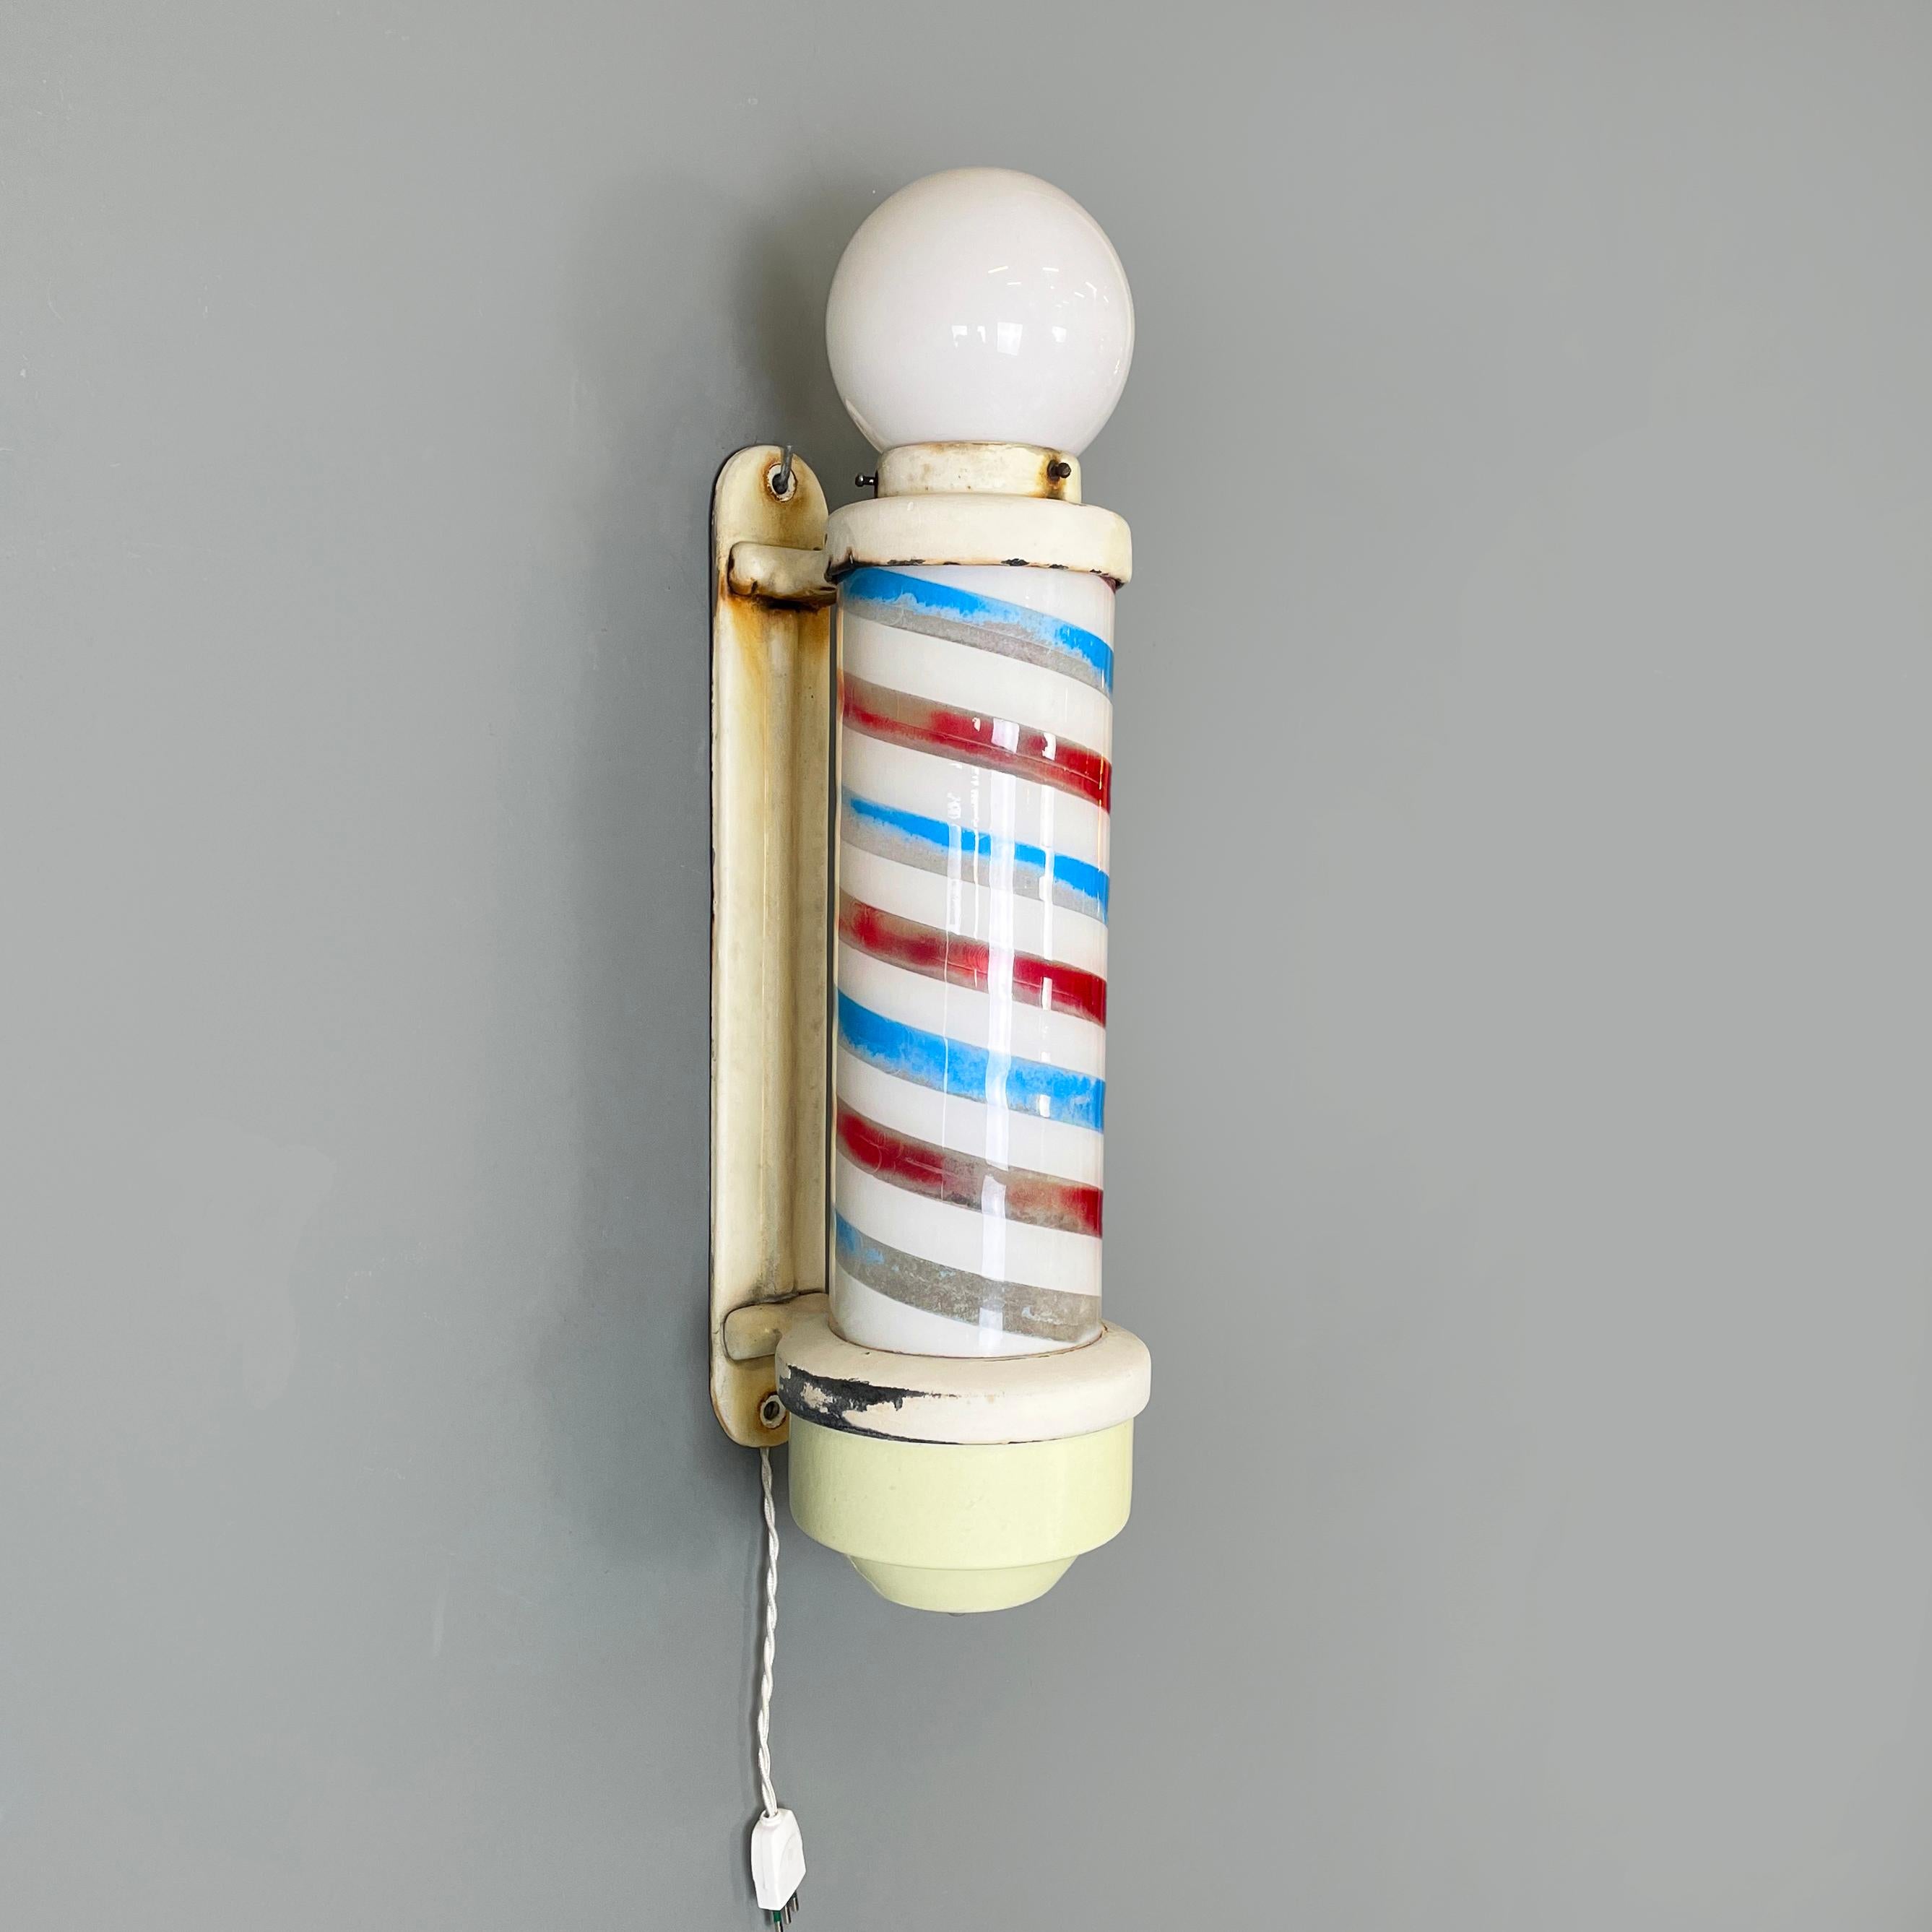 USA Mitte des Jahrhunderts Beleuchteter Frisörstab aus Kunststoff, Metall und Opalglas, 1950er Jahre
Beleuchtetes Friseur-Wandschild mit rundem Sockel, auch bekannt als Barber Pole. Im oberen Teil befindet sich eine Opalglaskugel mit Licht. Der